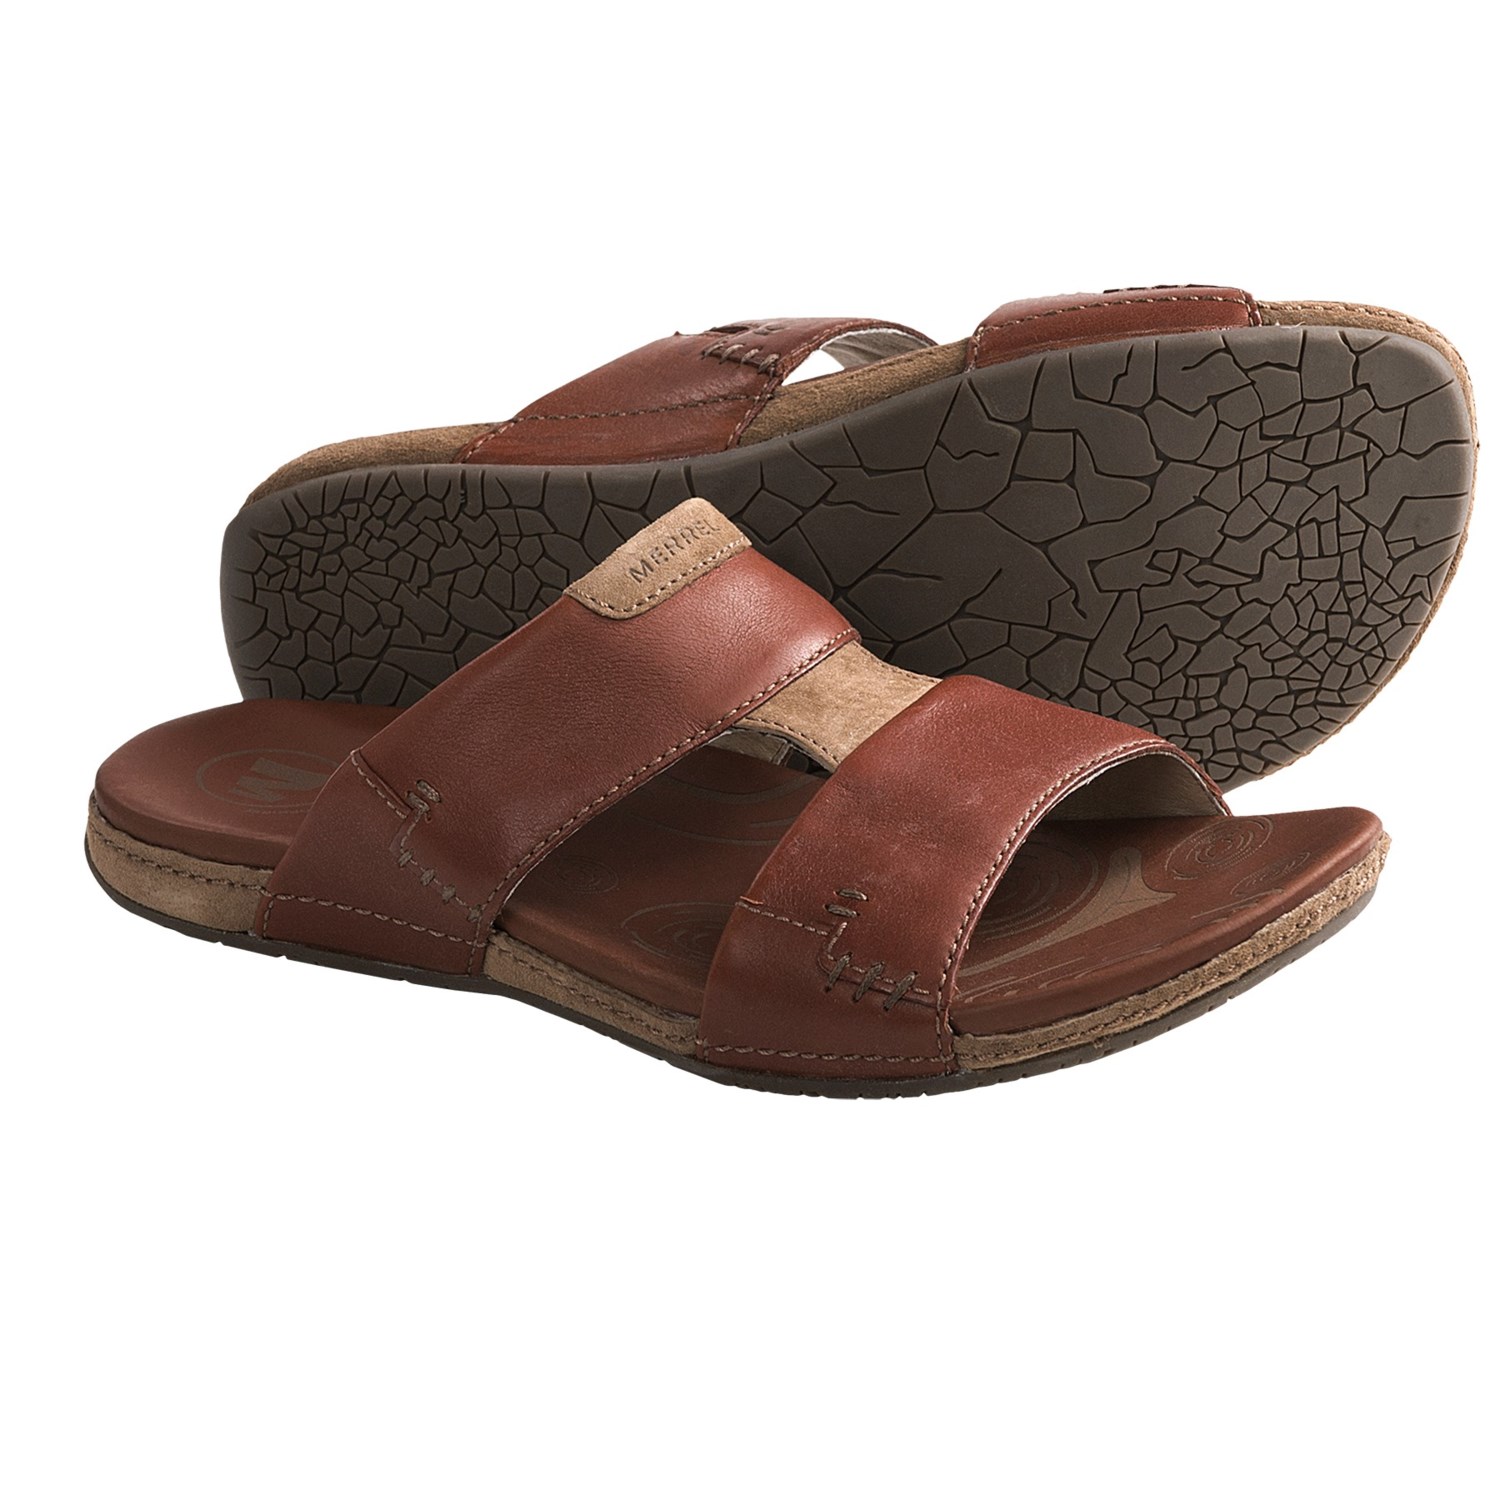 Merrell Lancet Slide Sandals - Leather (For Men) - Save 31%